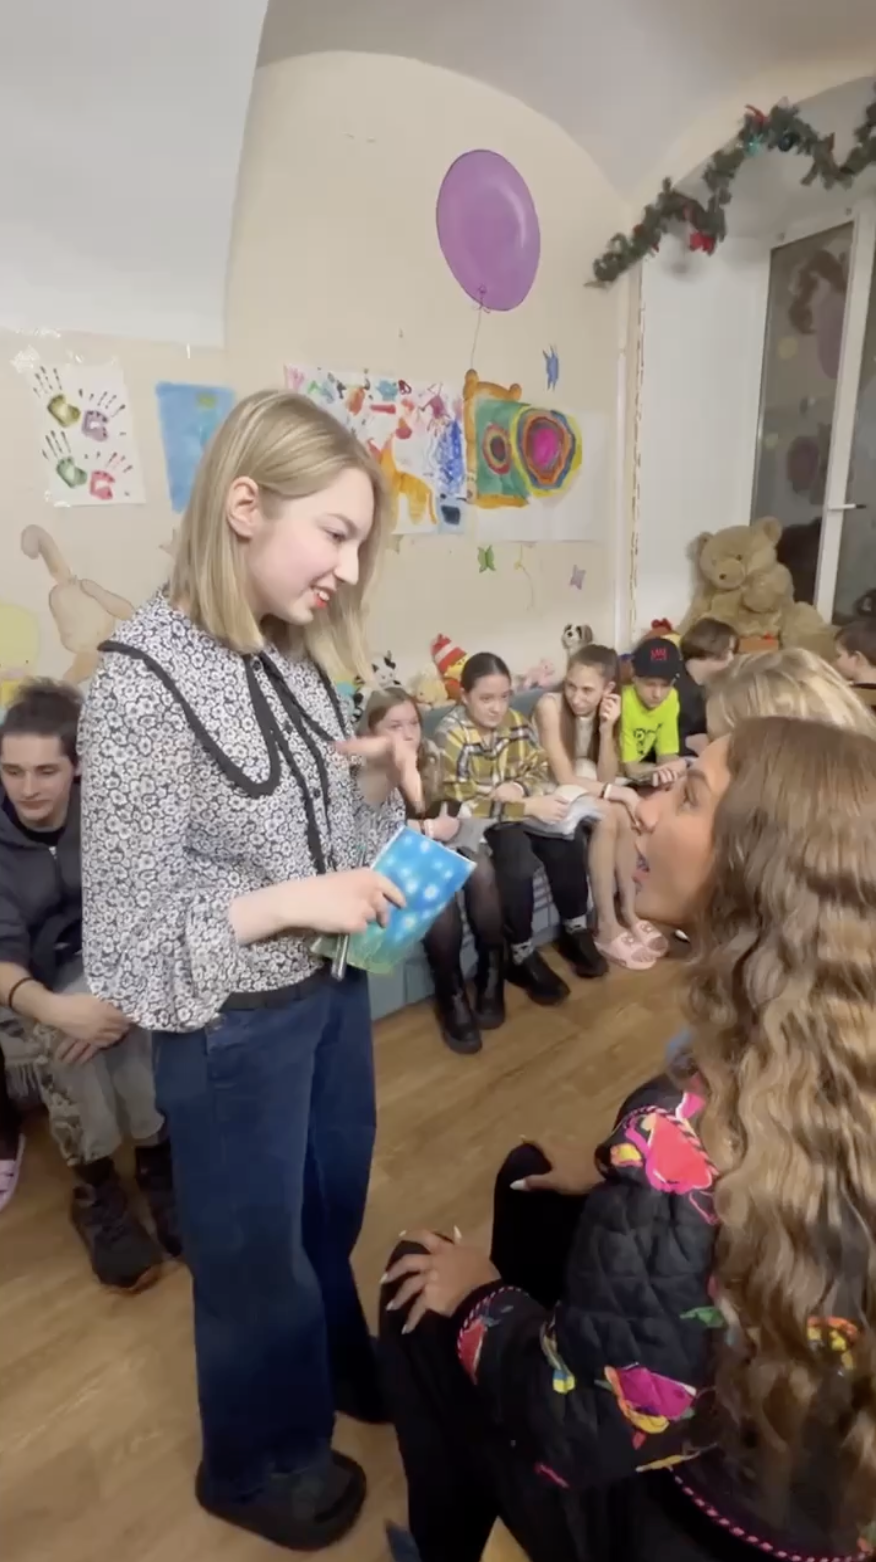 Украинская певица-предательница перевела сумасшедшую сумму фонду, который ворует детей из оккупированного Донецка и перевозит их в Россию